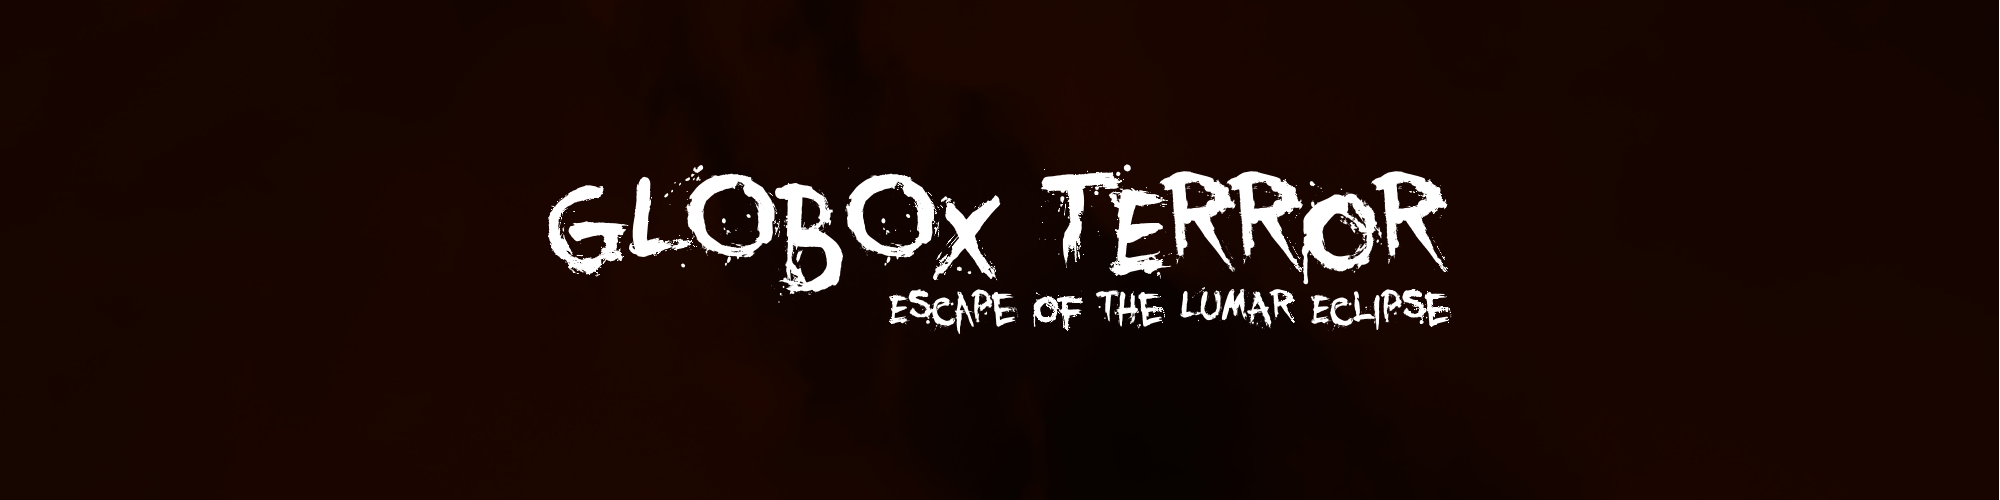 Globox Terror: Escape of the Lumar Eclipse